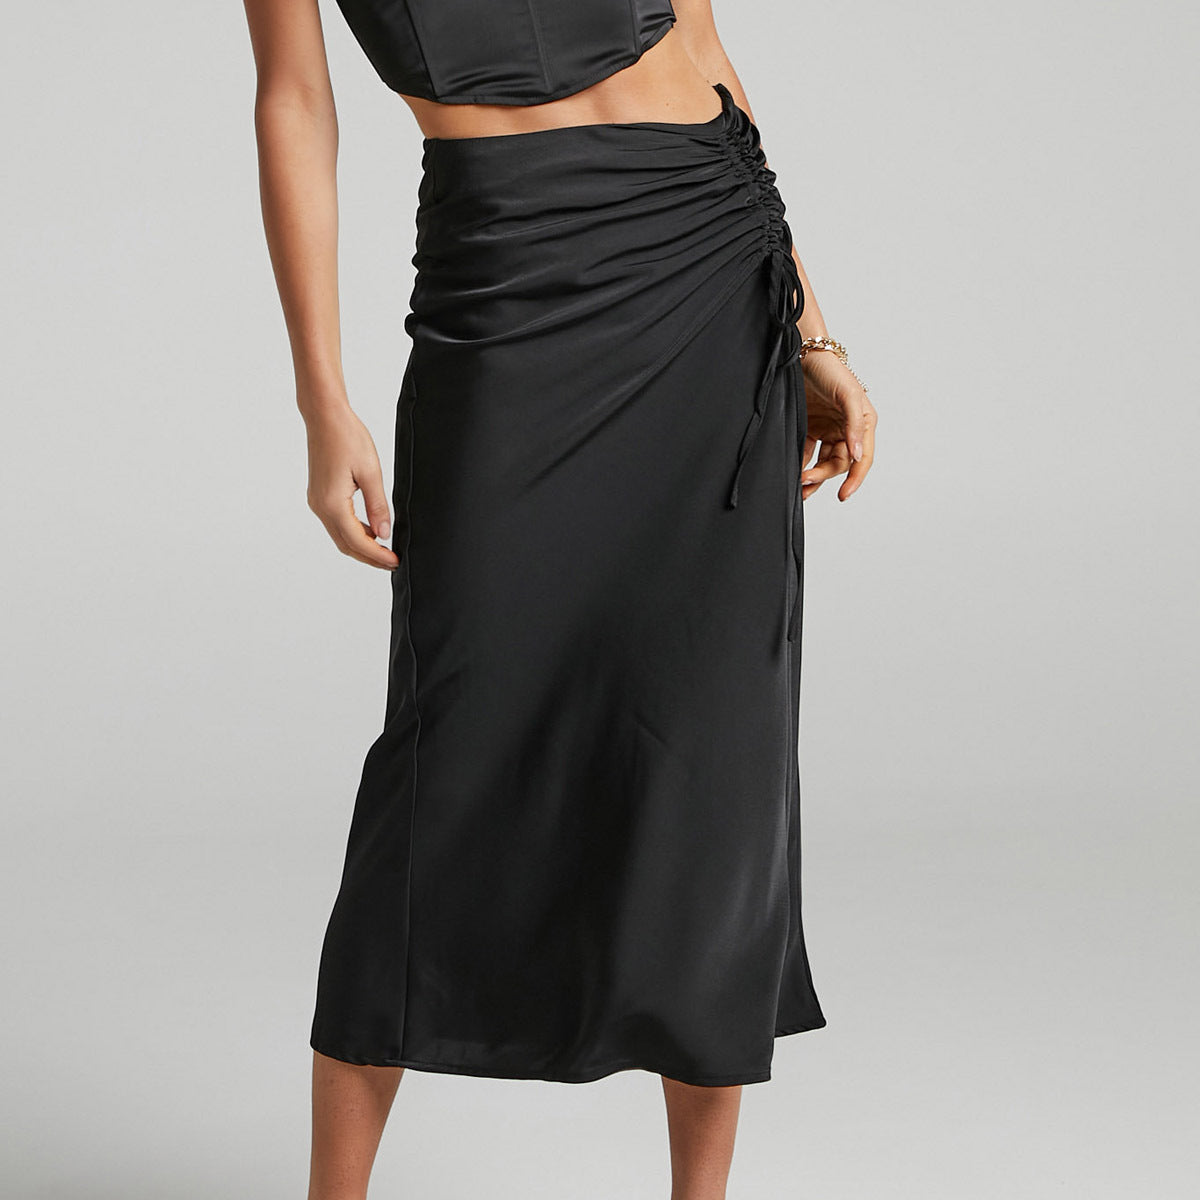 Women's Pleating Satin Summer High Waist Slimming Zipper Skirts